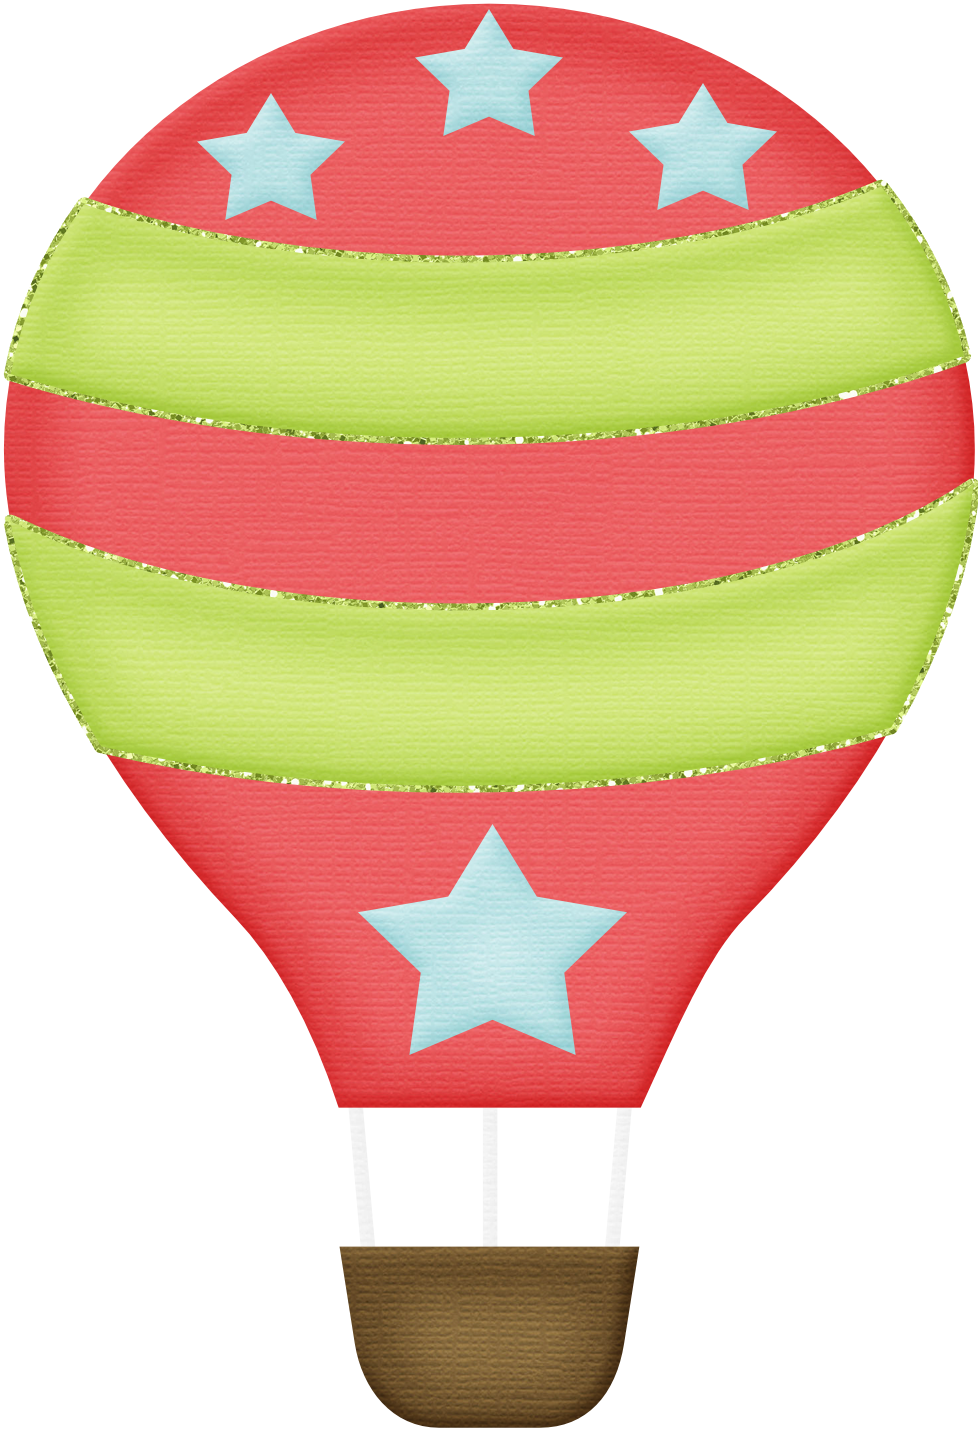 Clipart - Hot Air Balloon (978x1431)